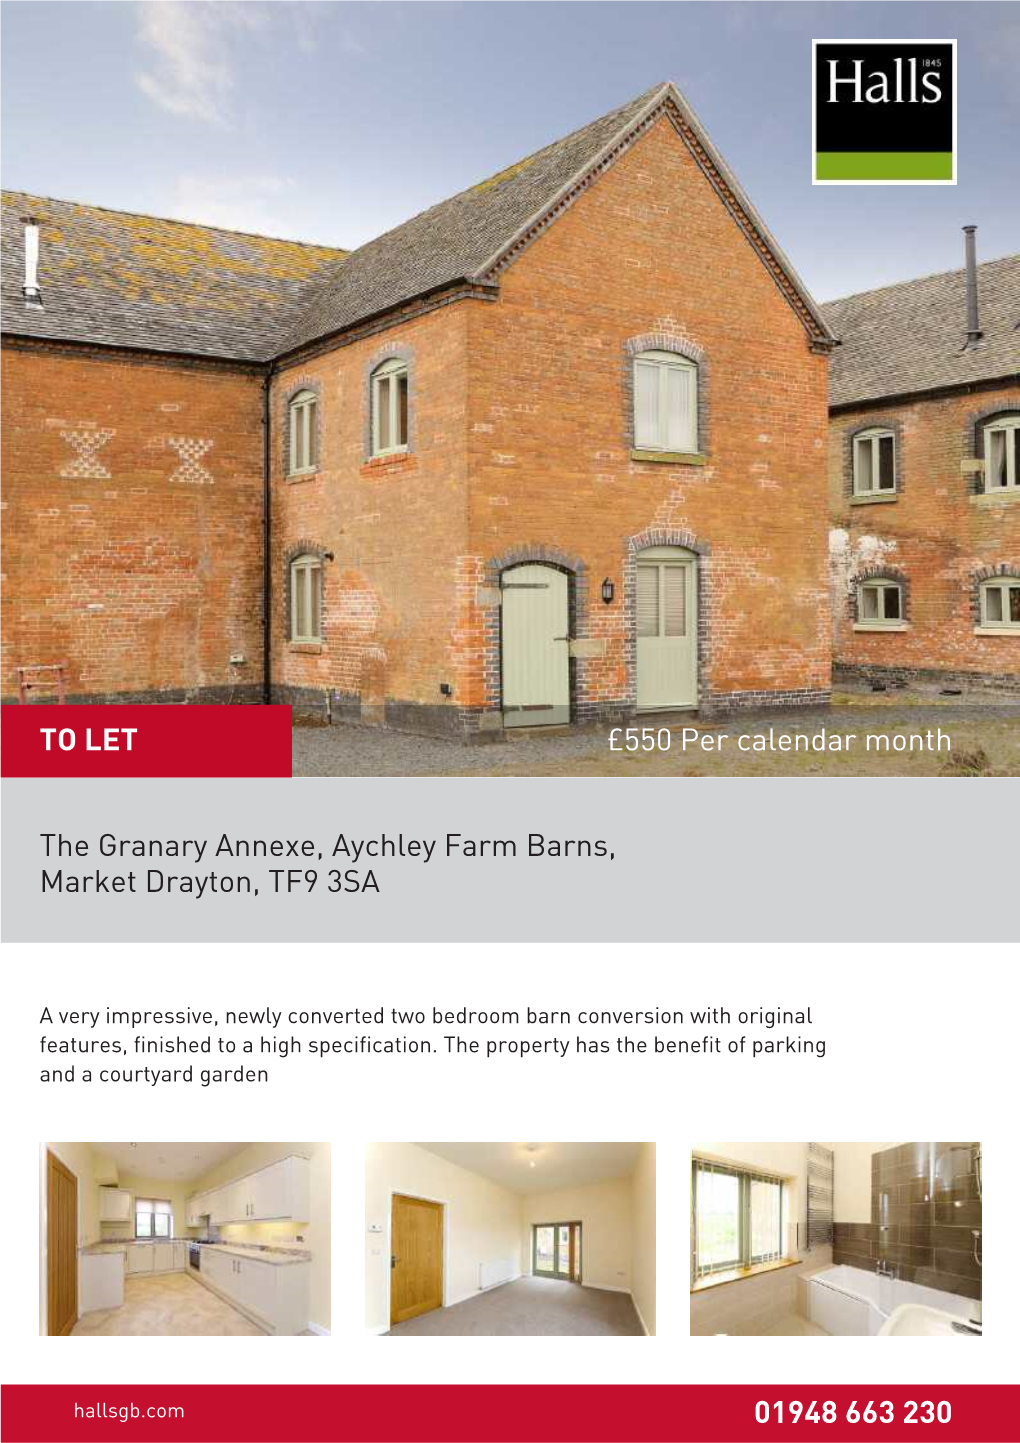 The Granary Annexe, Aychley Farm Barns, Market Drayton, TF9 3SA